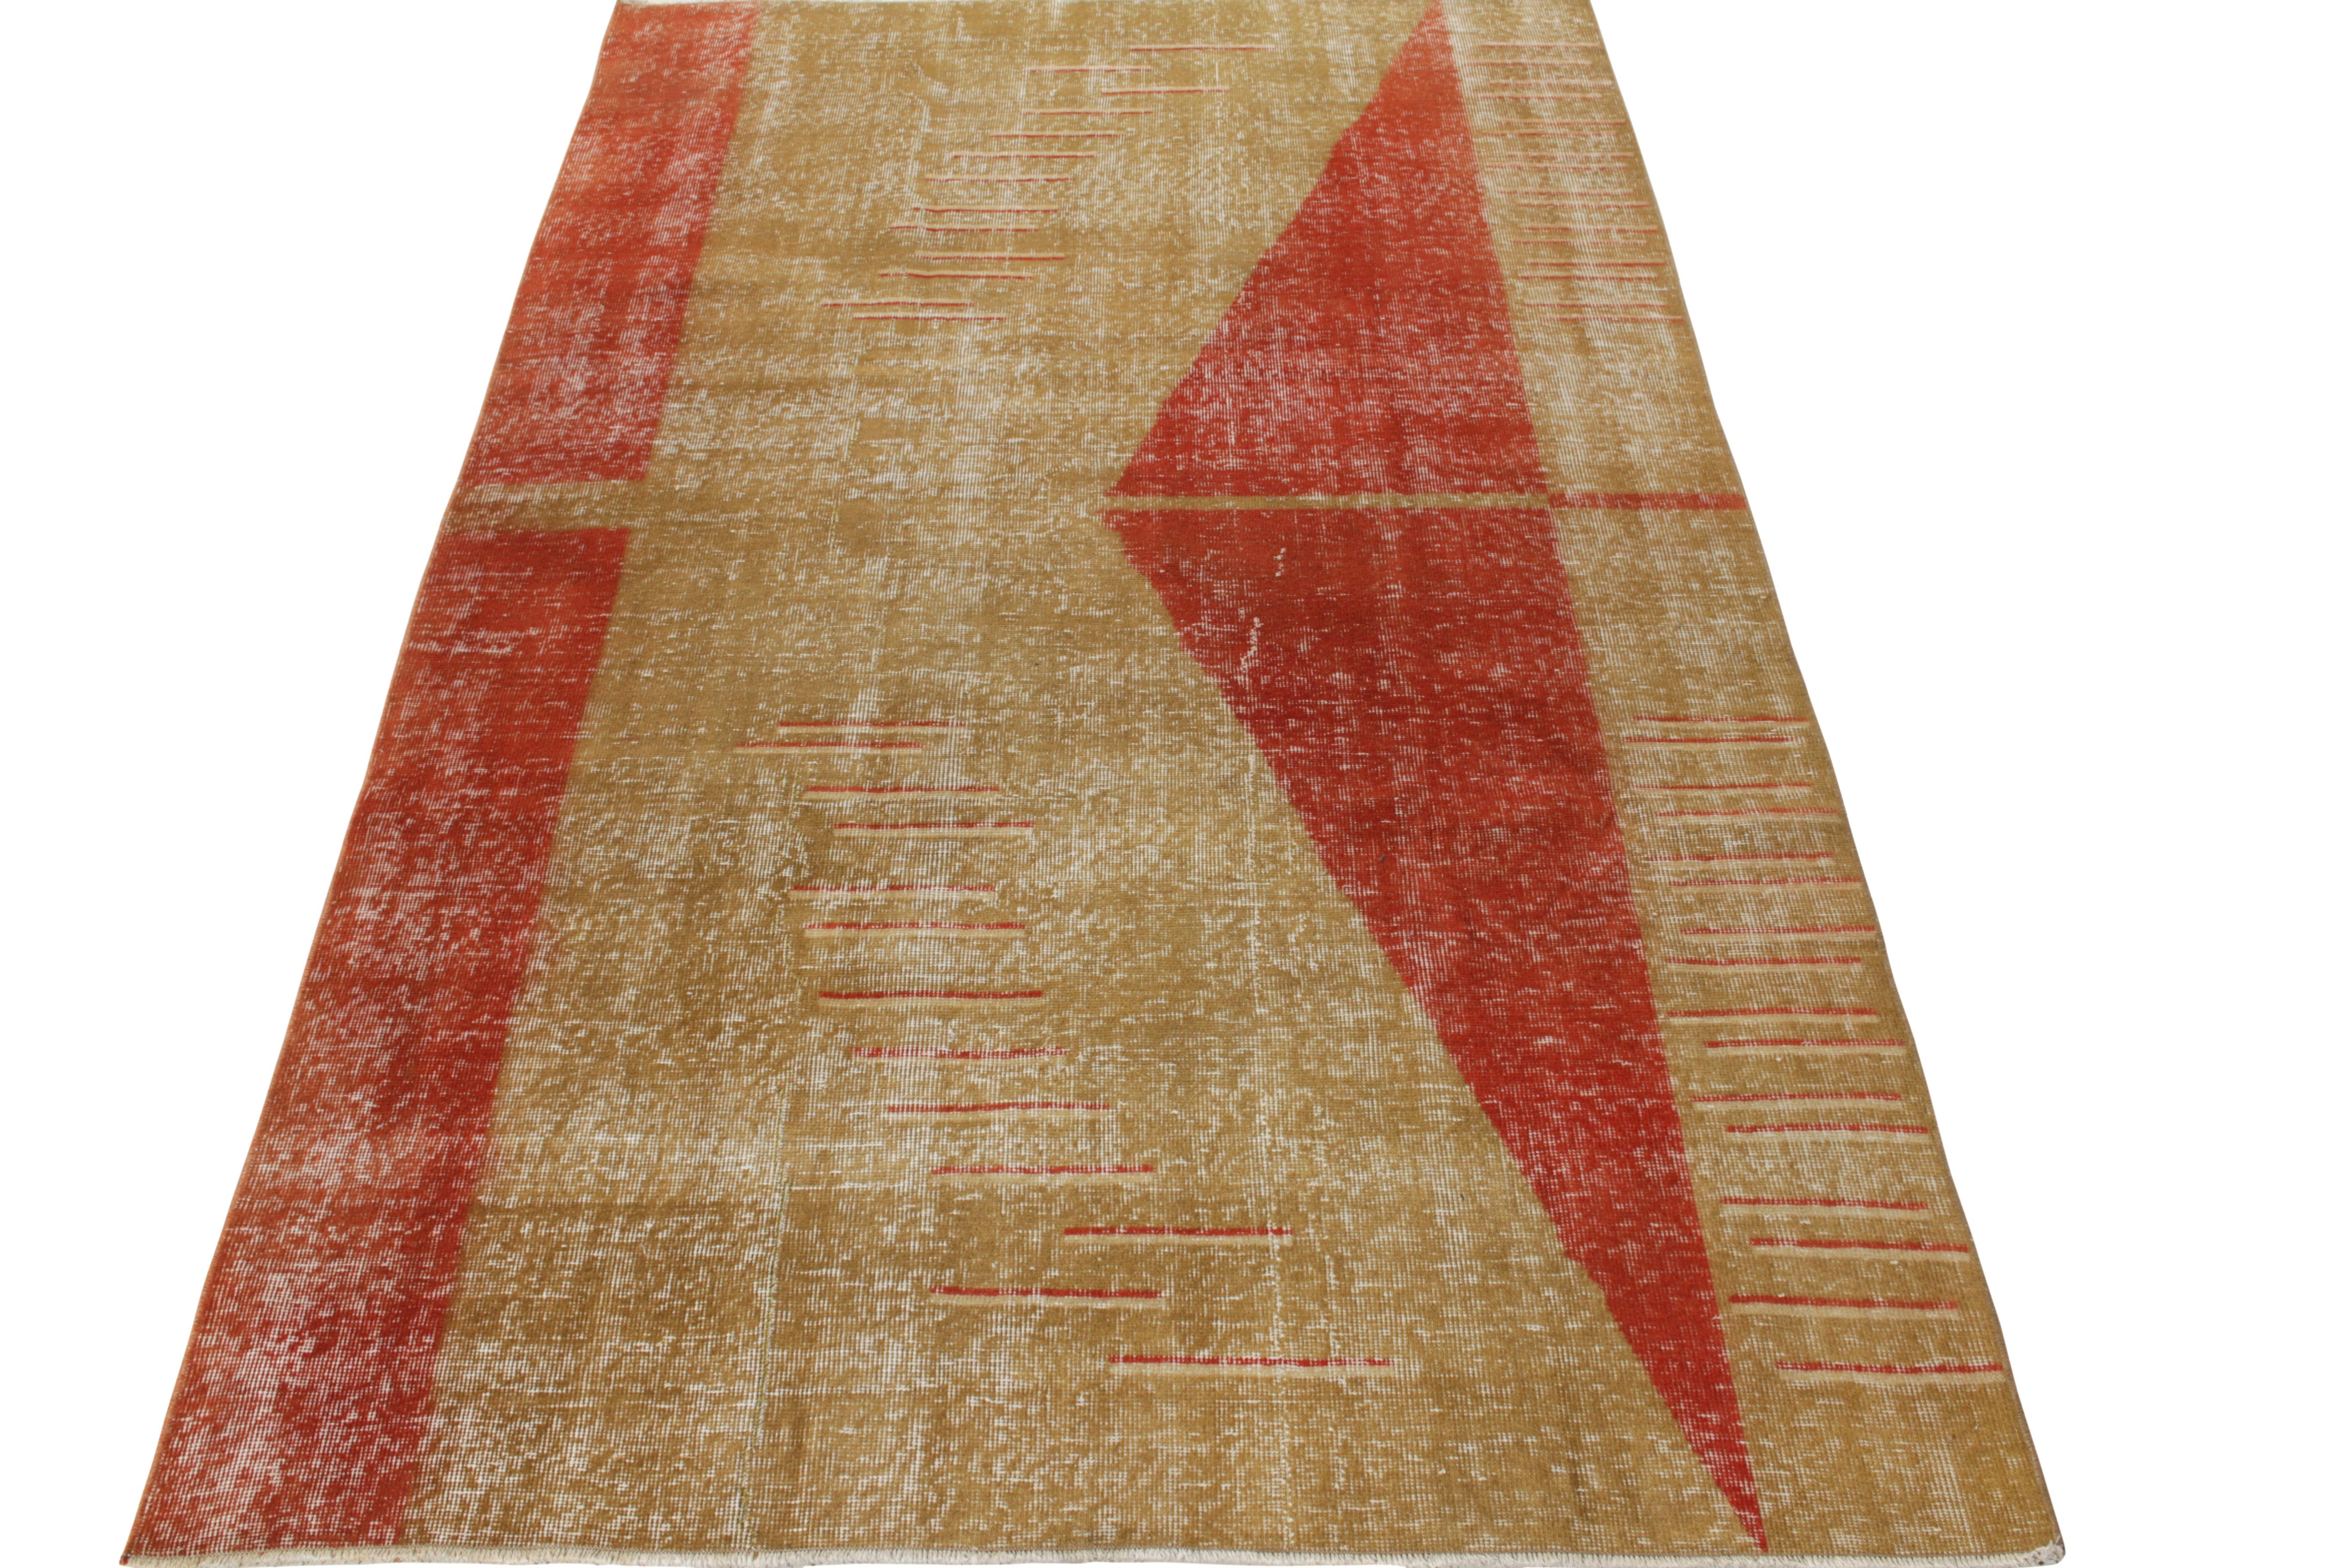 Als Musterbeispiel für handwerkliche Überzeugung strahlt dieser 5 x 8 große Vintage-Teppich die Exklusivität des türkischen Stils der 1960er Jahre aus. Diese phänomenale Zeichnung eines renommierten türkischen Designers aus feiner Wolle zeigt ein